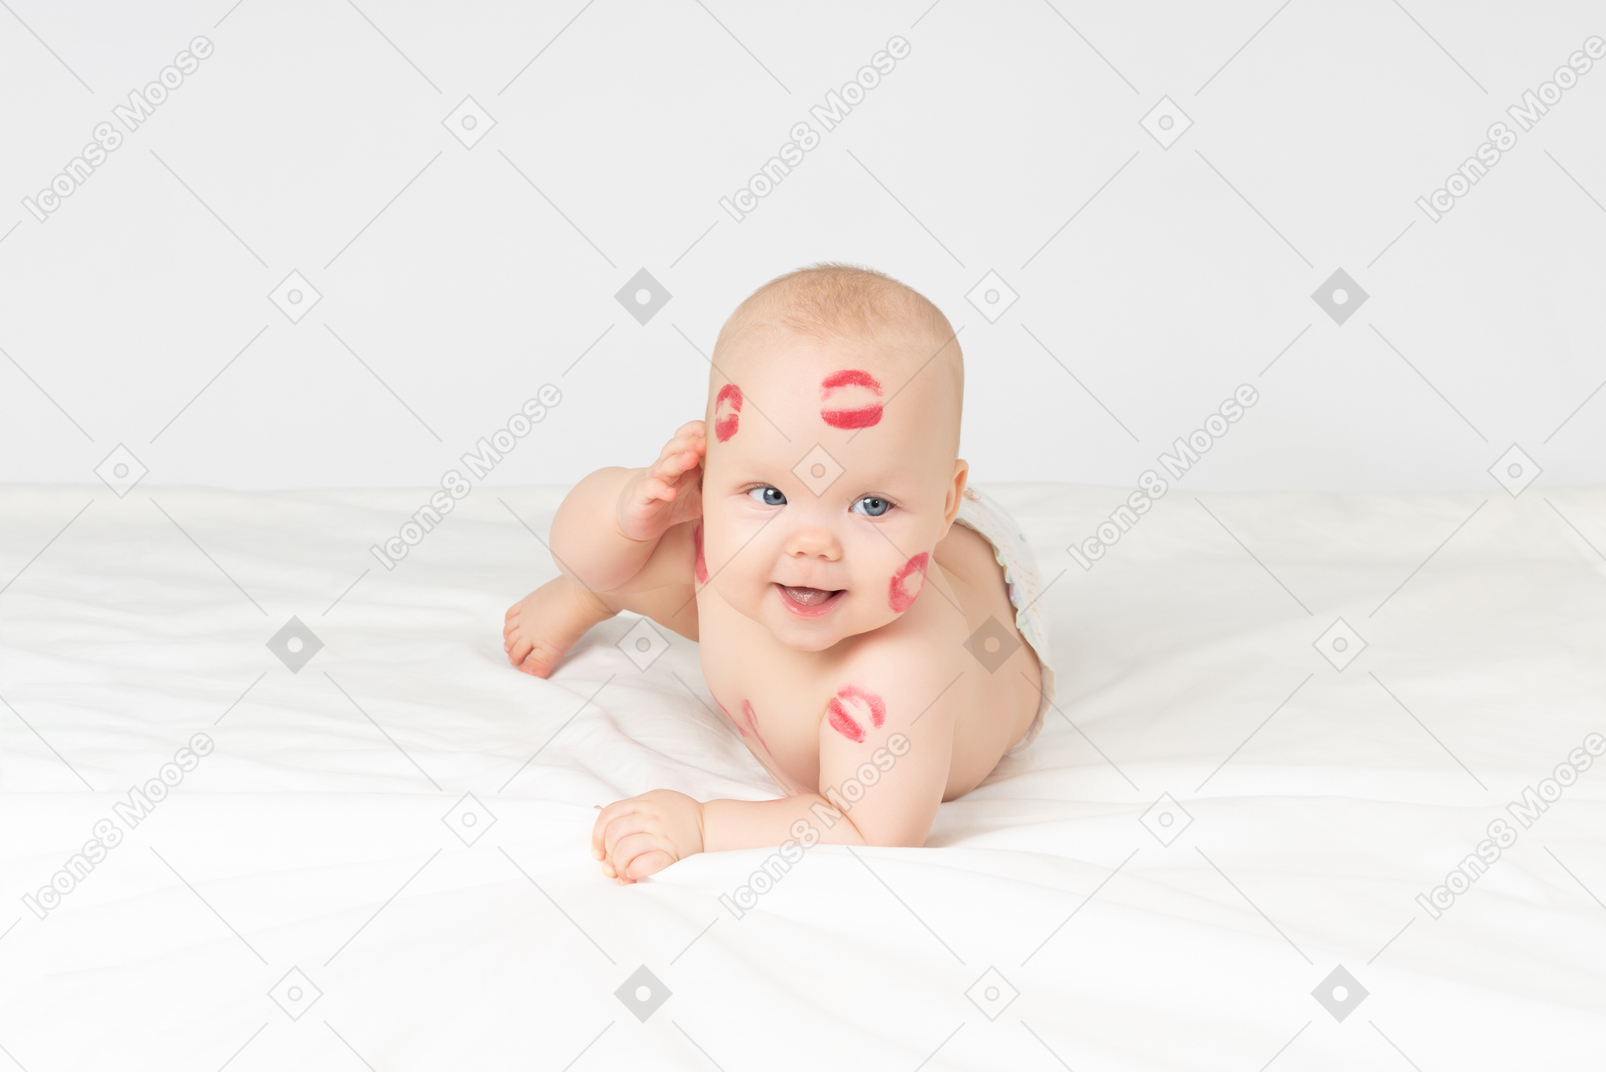 赤い口紅の女の赤ちゃんが手で彼女の顔に触れる胃ans横になっています。